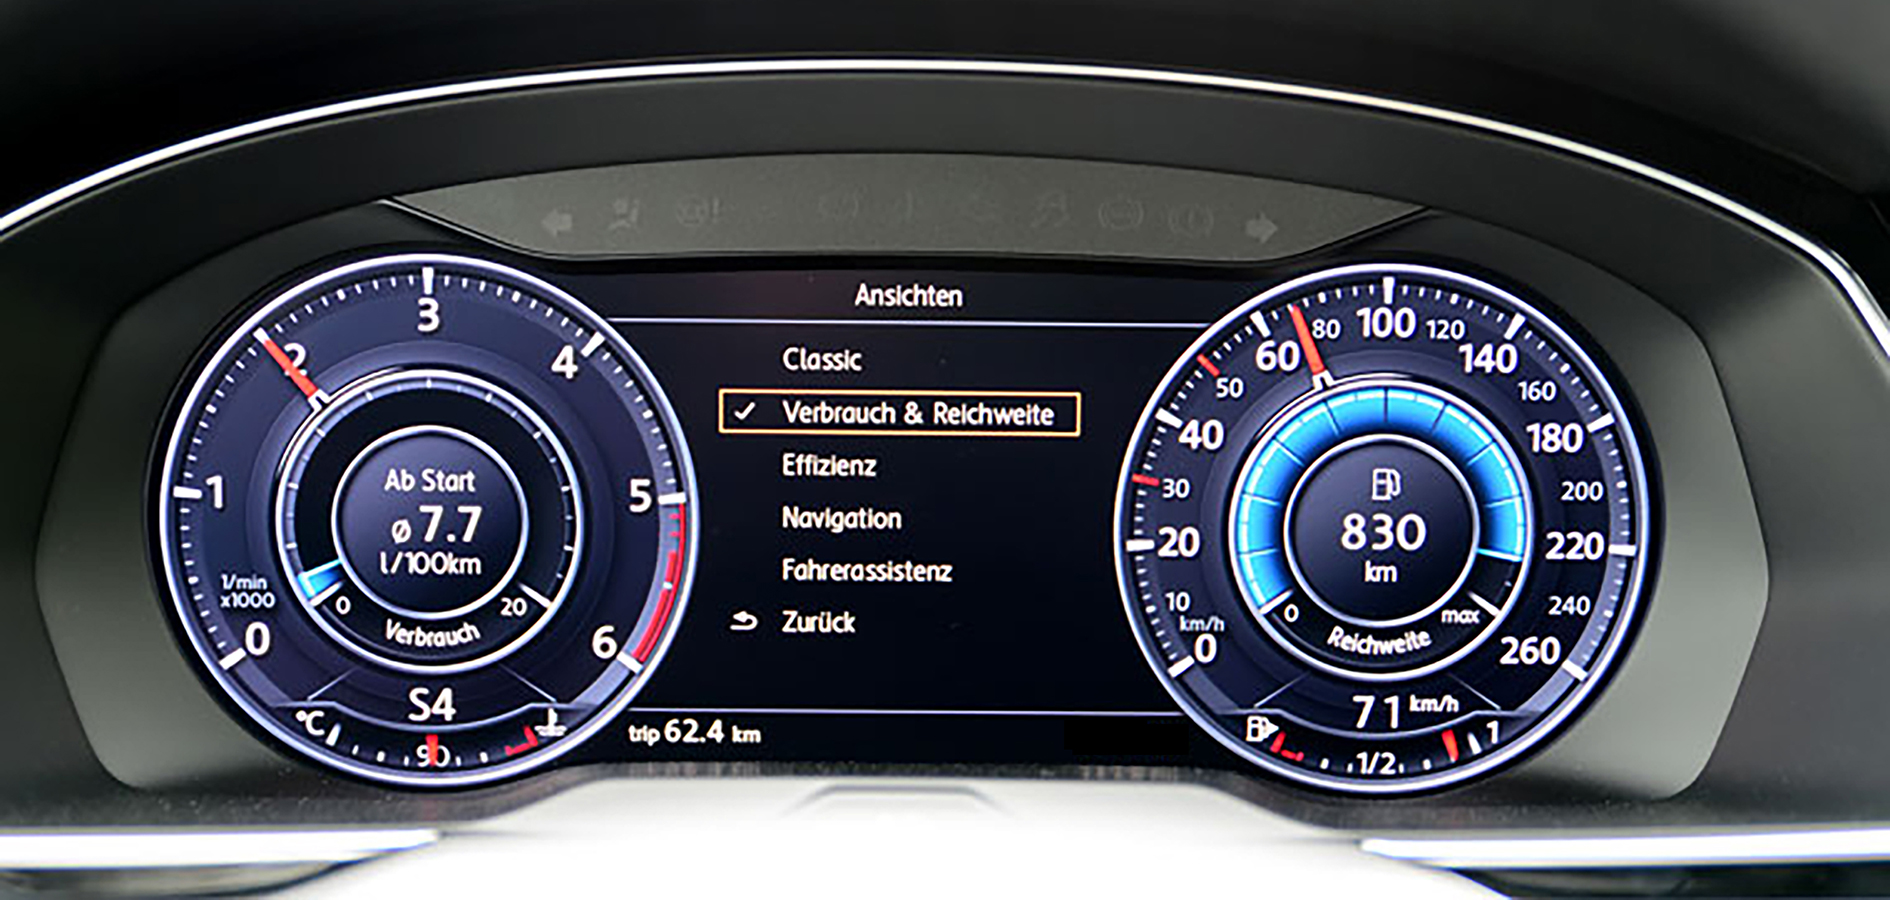 2x Display Schutz Folie für Volkswagen Passat B8 2017 Active Info Chockpit 